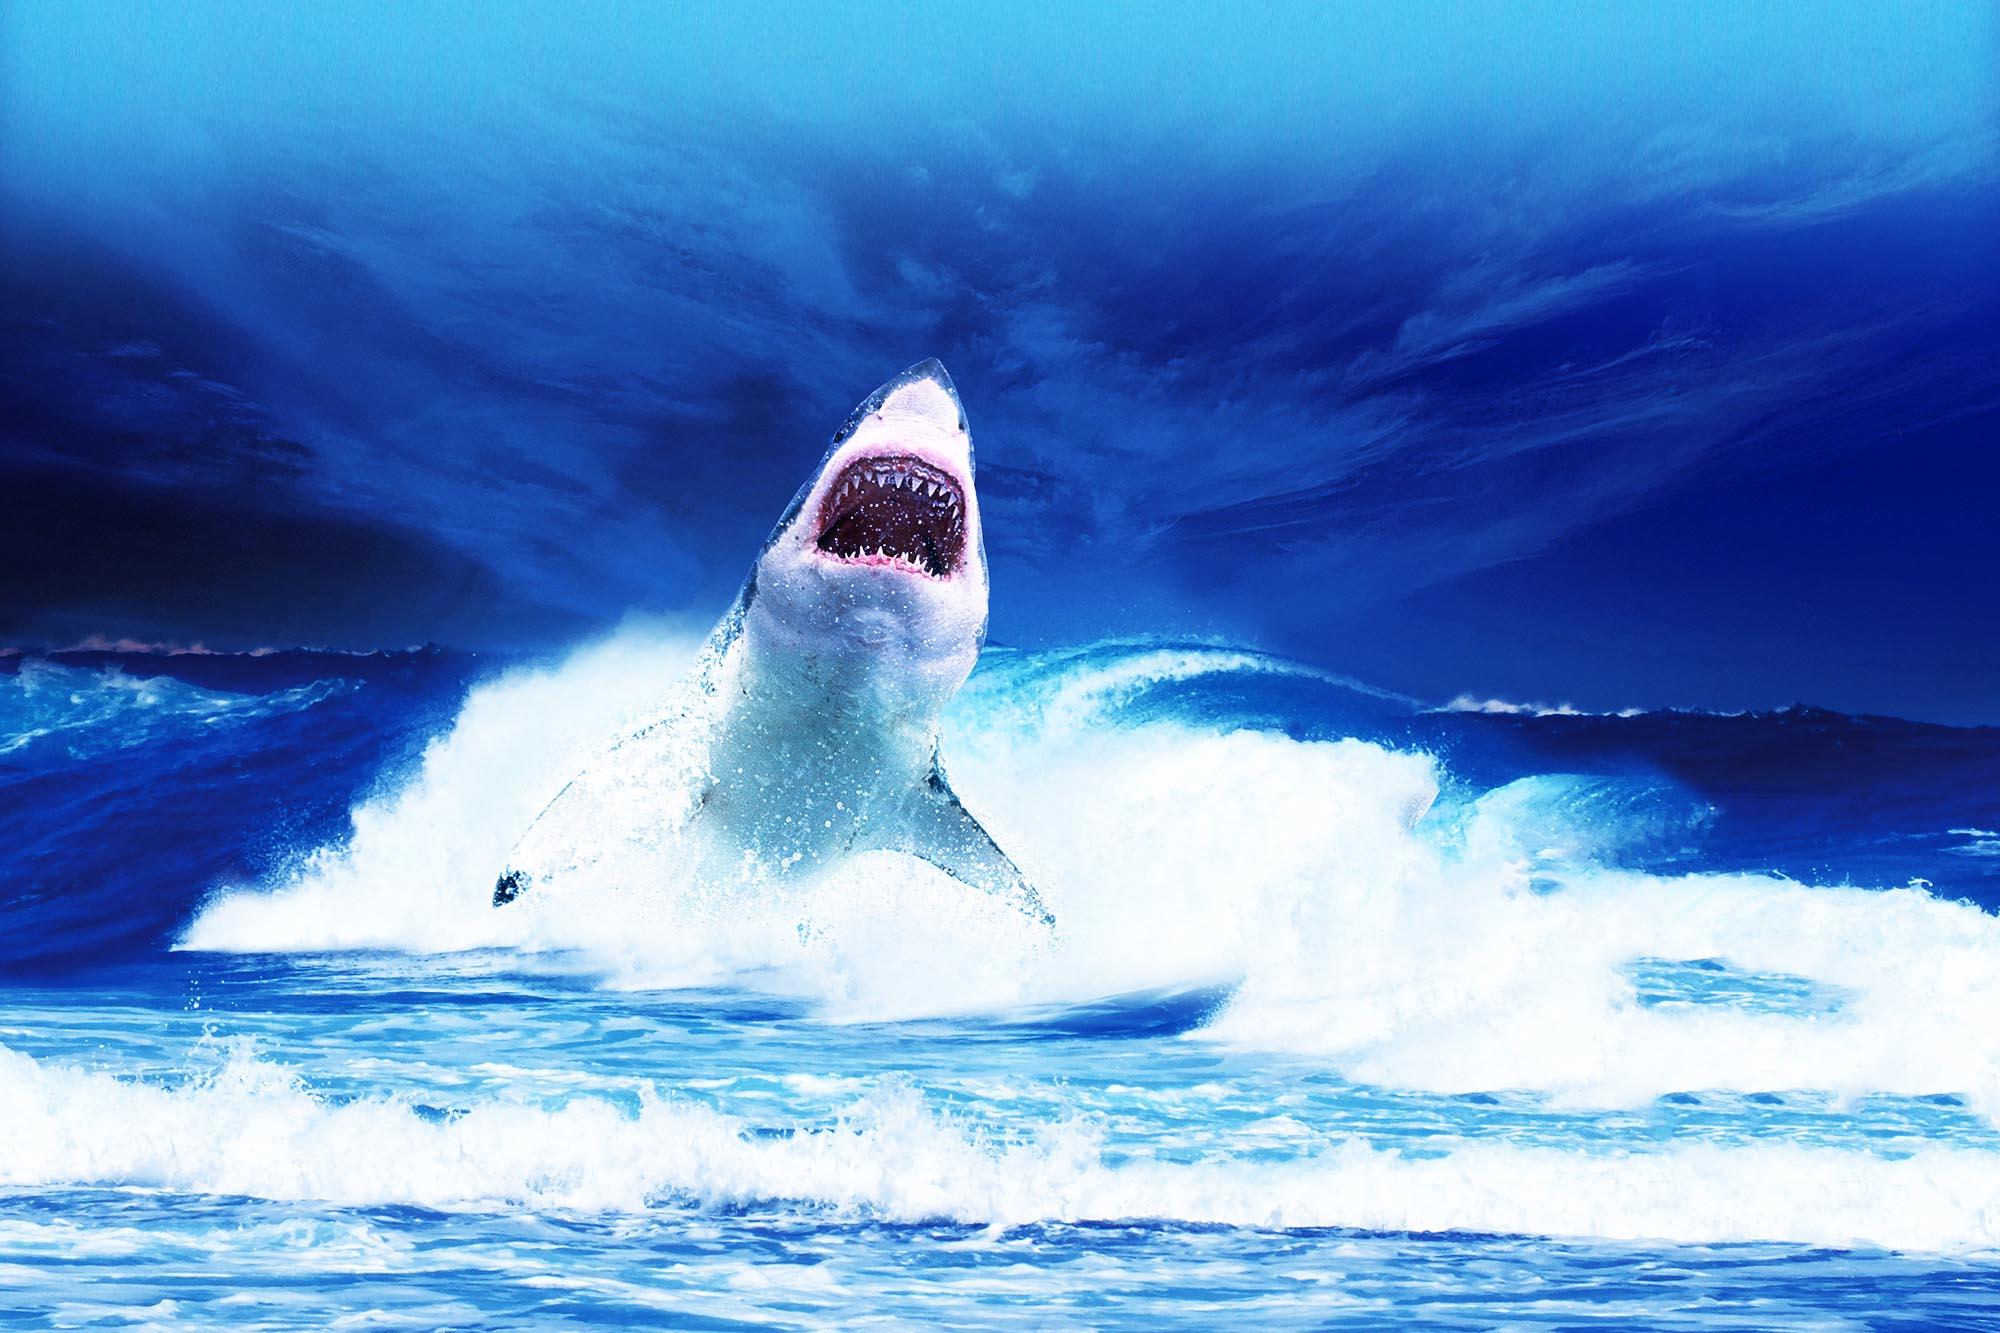 Бесплатное фото Фото акула, подводный мир онлайн бесплатно